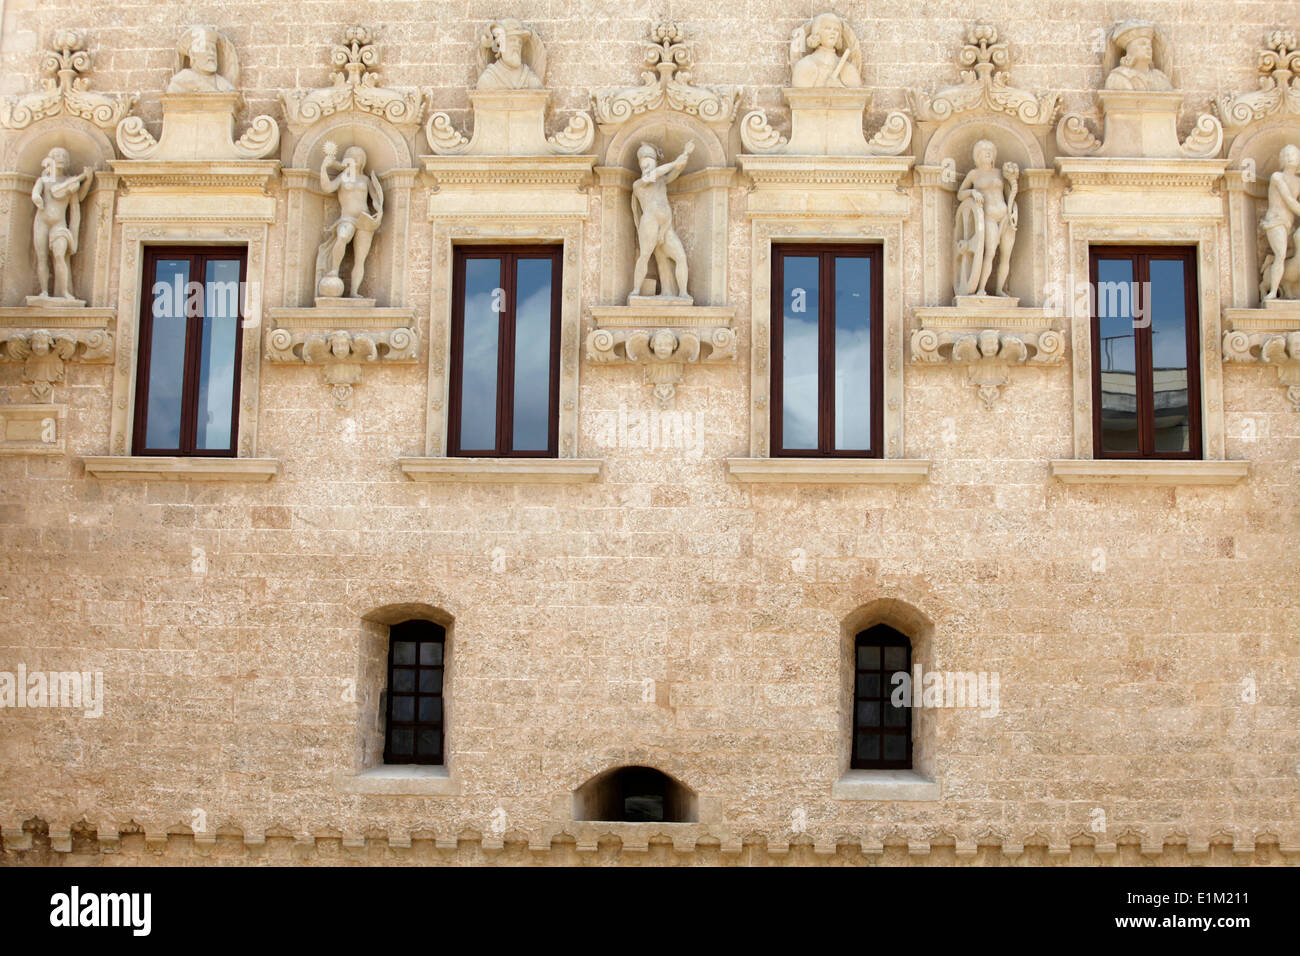 Castello (castle), Corigliano d'Otranto Stock Photo